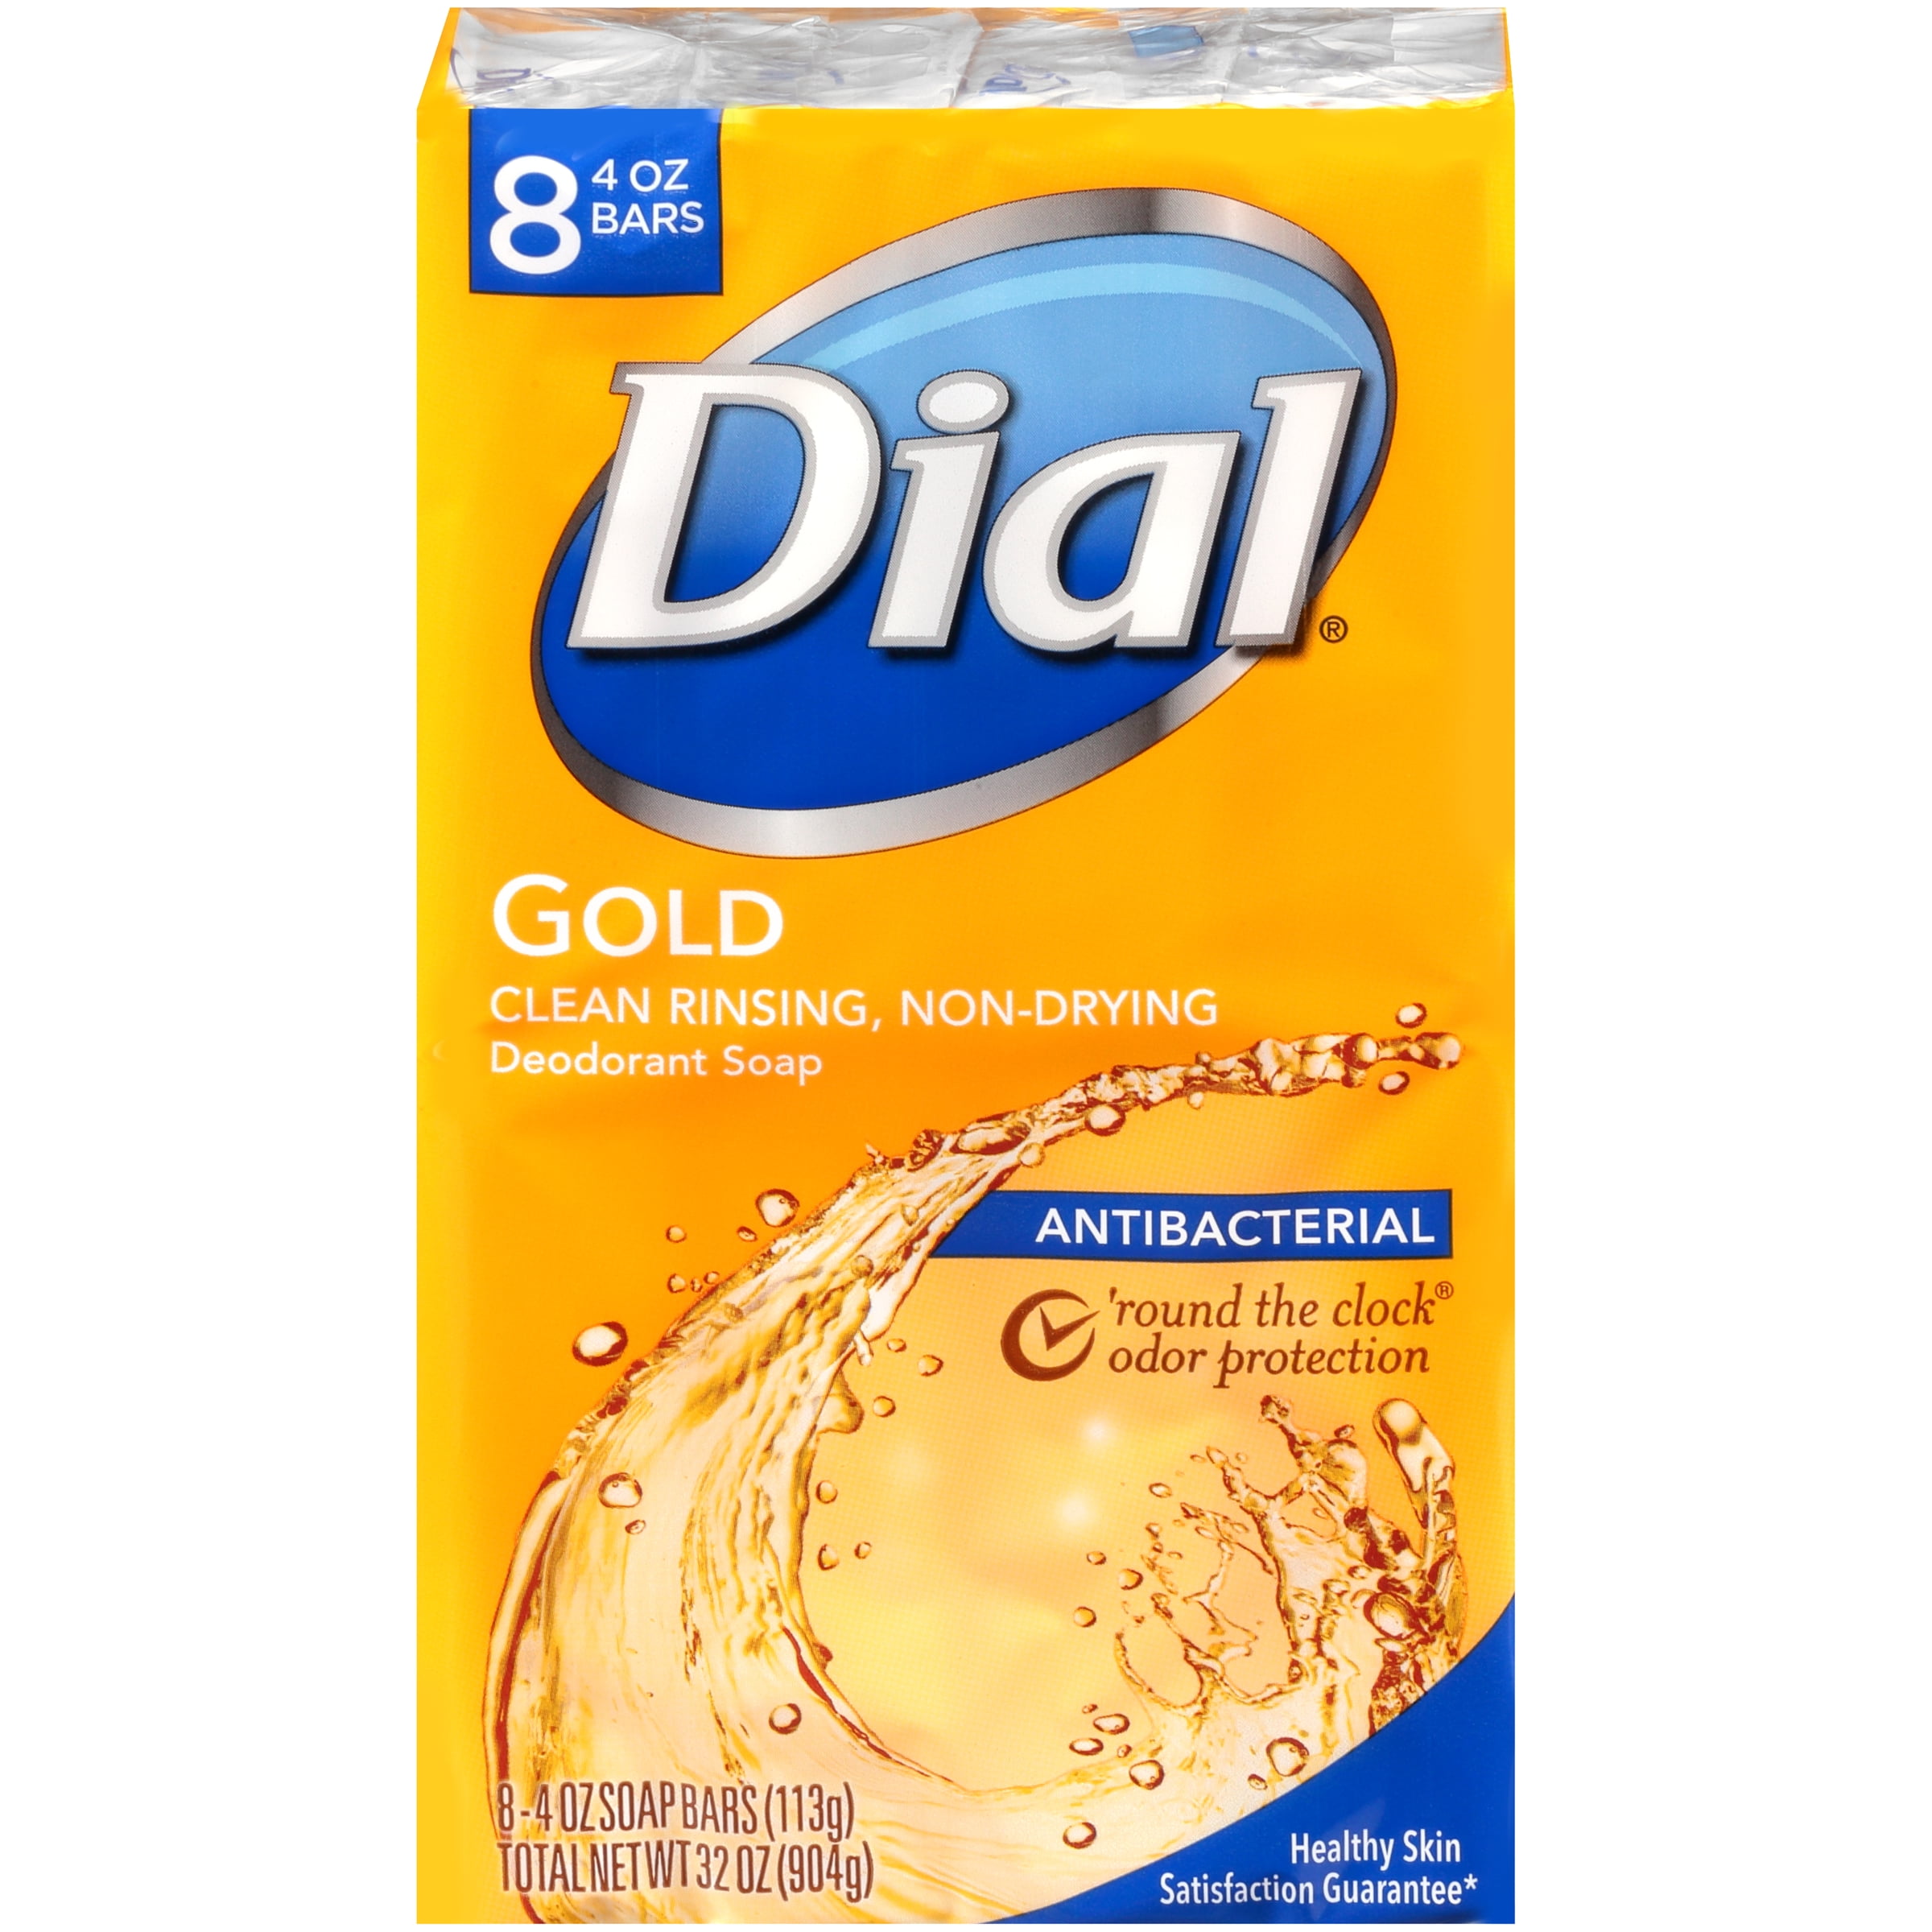 Dial Antibacterial Bar Soap, Gold, 4 oz, 8 bars, Wal-mart, Walmart.com. 